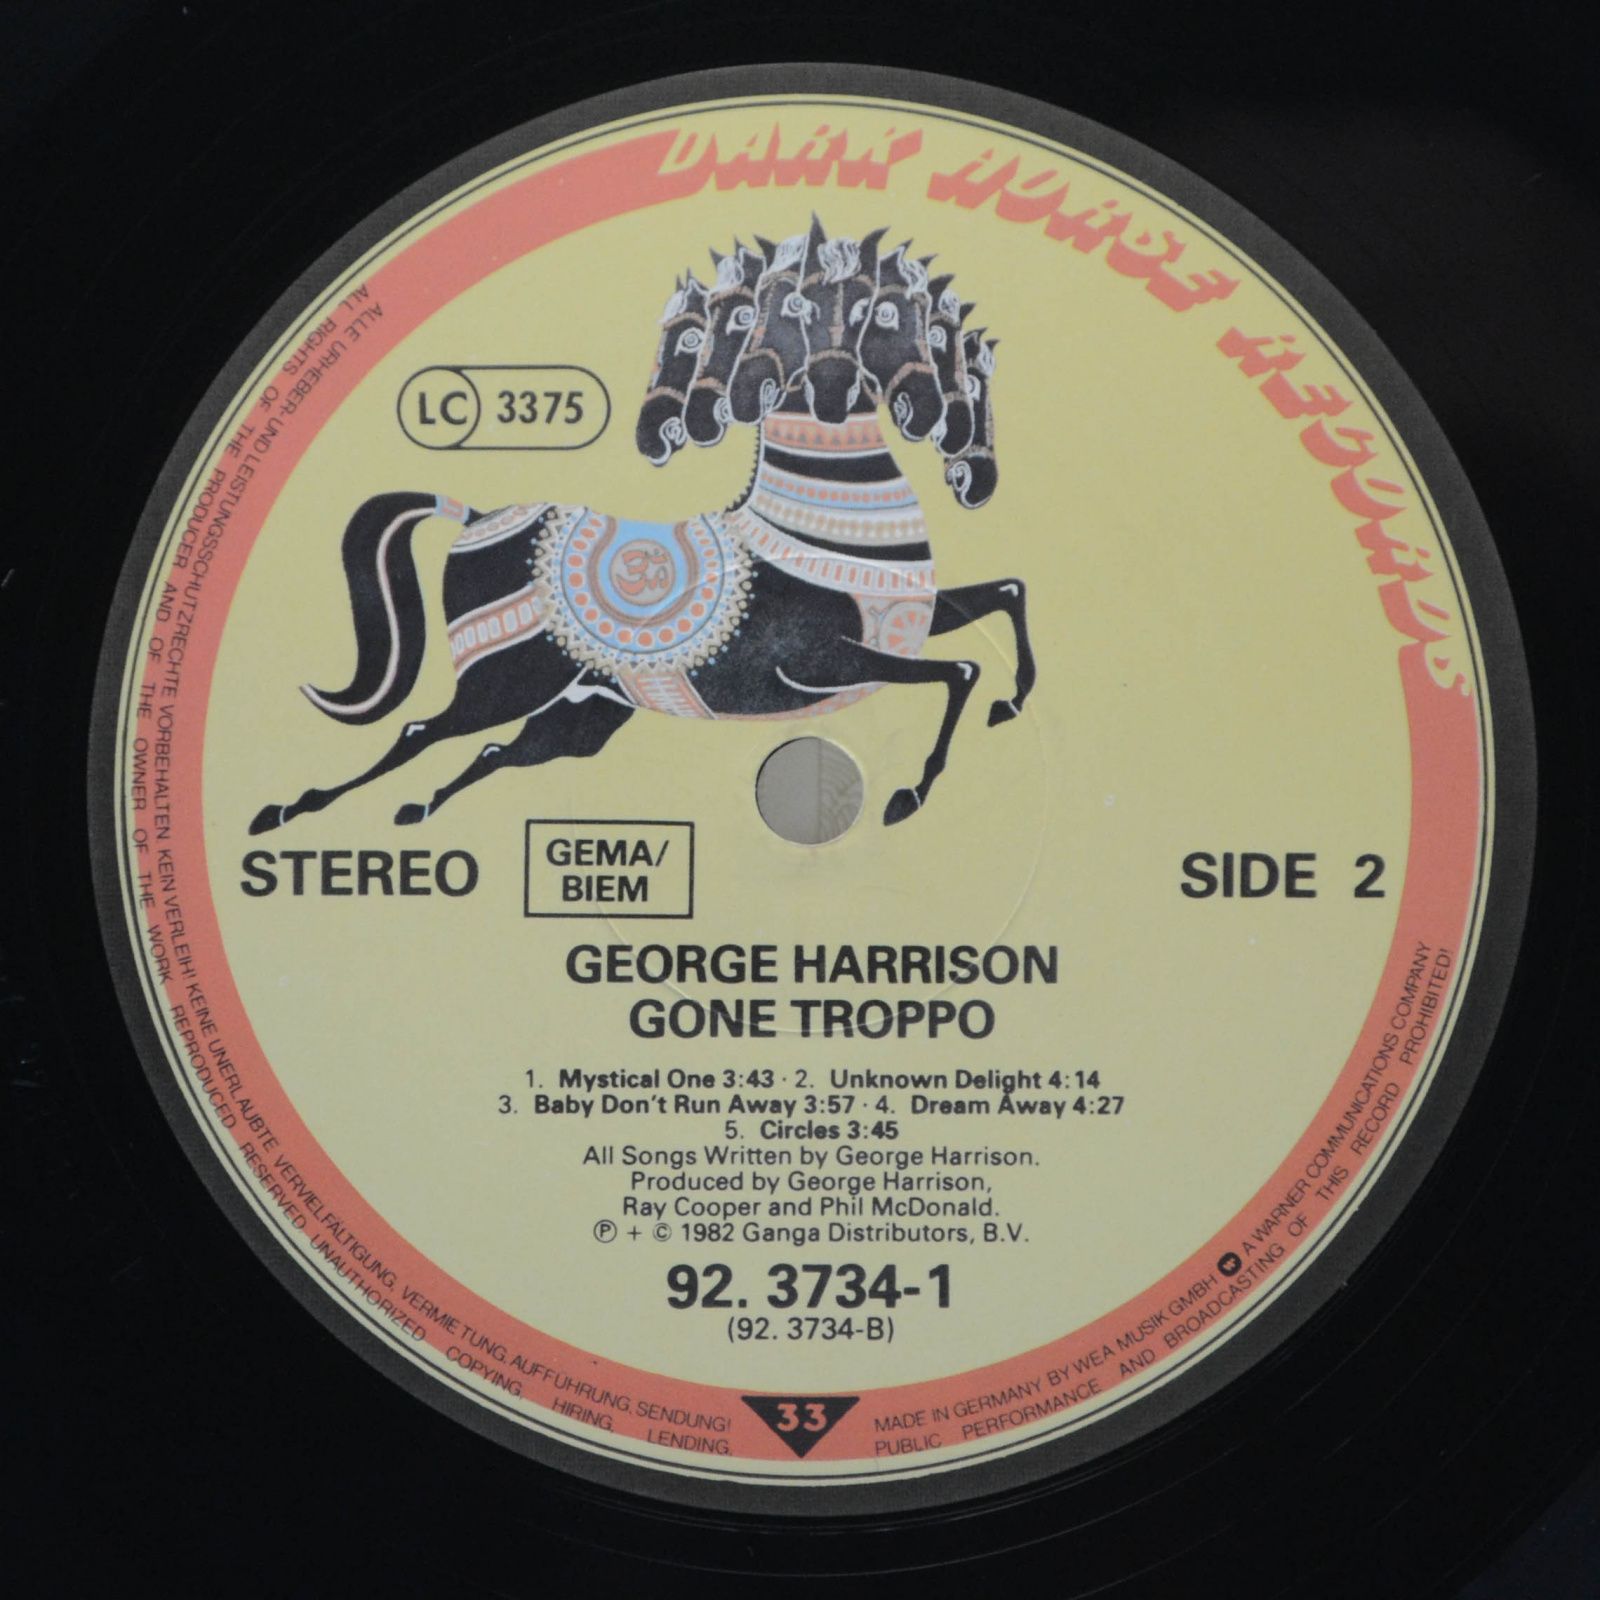 George Harrison — Gone Troppo, 19??